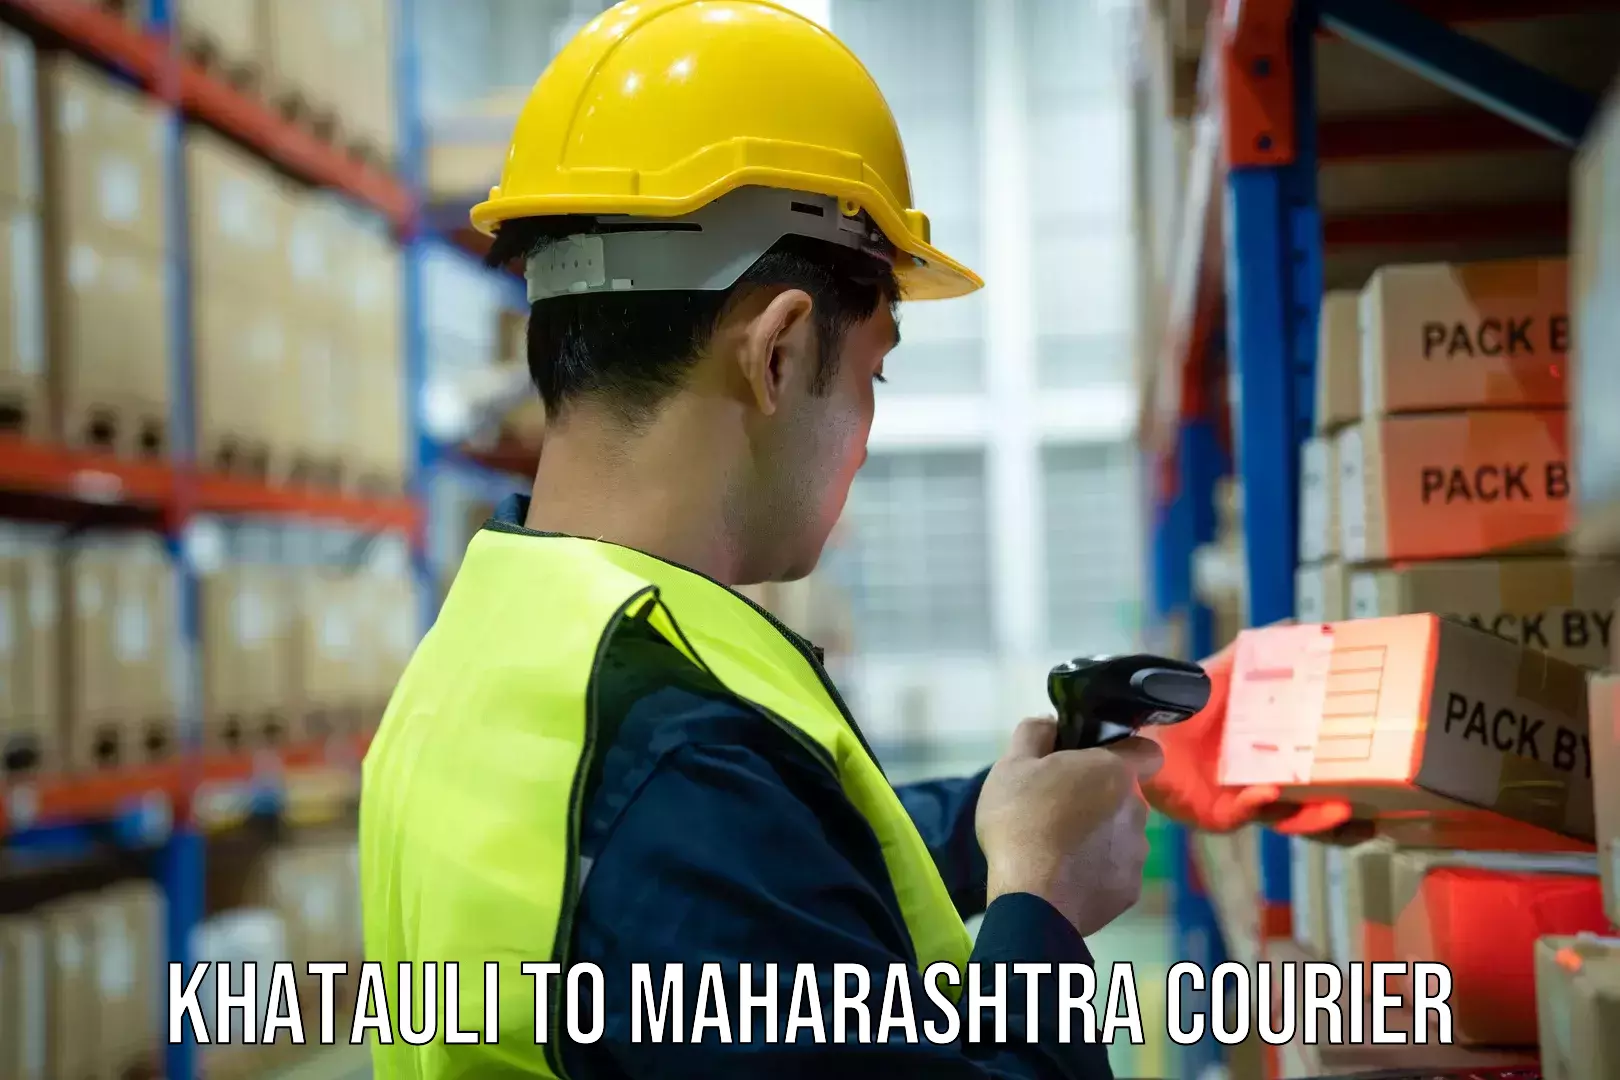 Courier service innovation Khatauli to Maharashtra